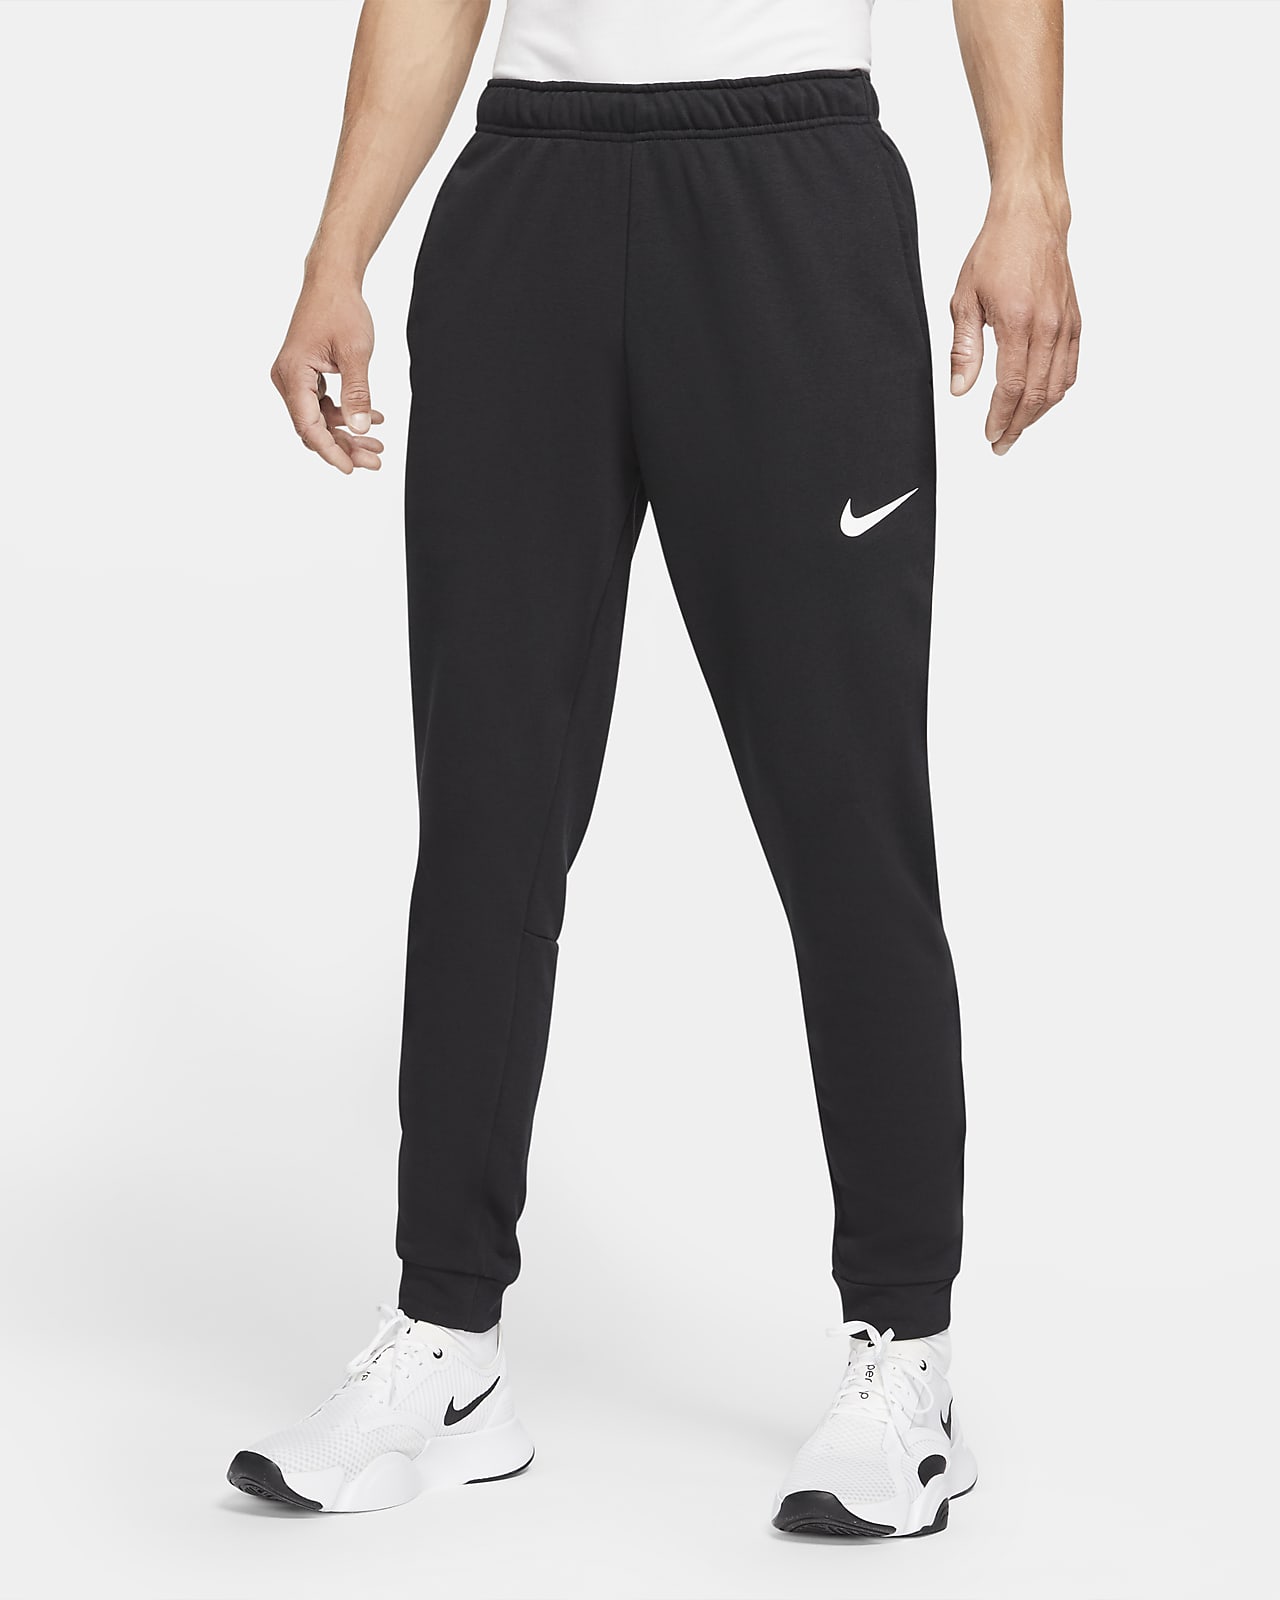 Pants de entrenamiento entallados para hombre Nike Dri-FIT